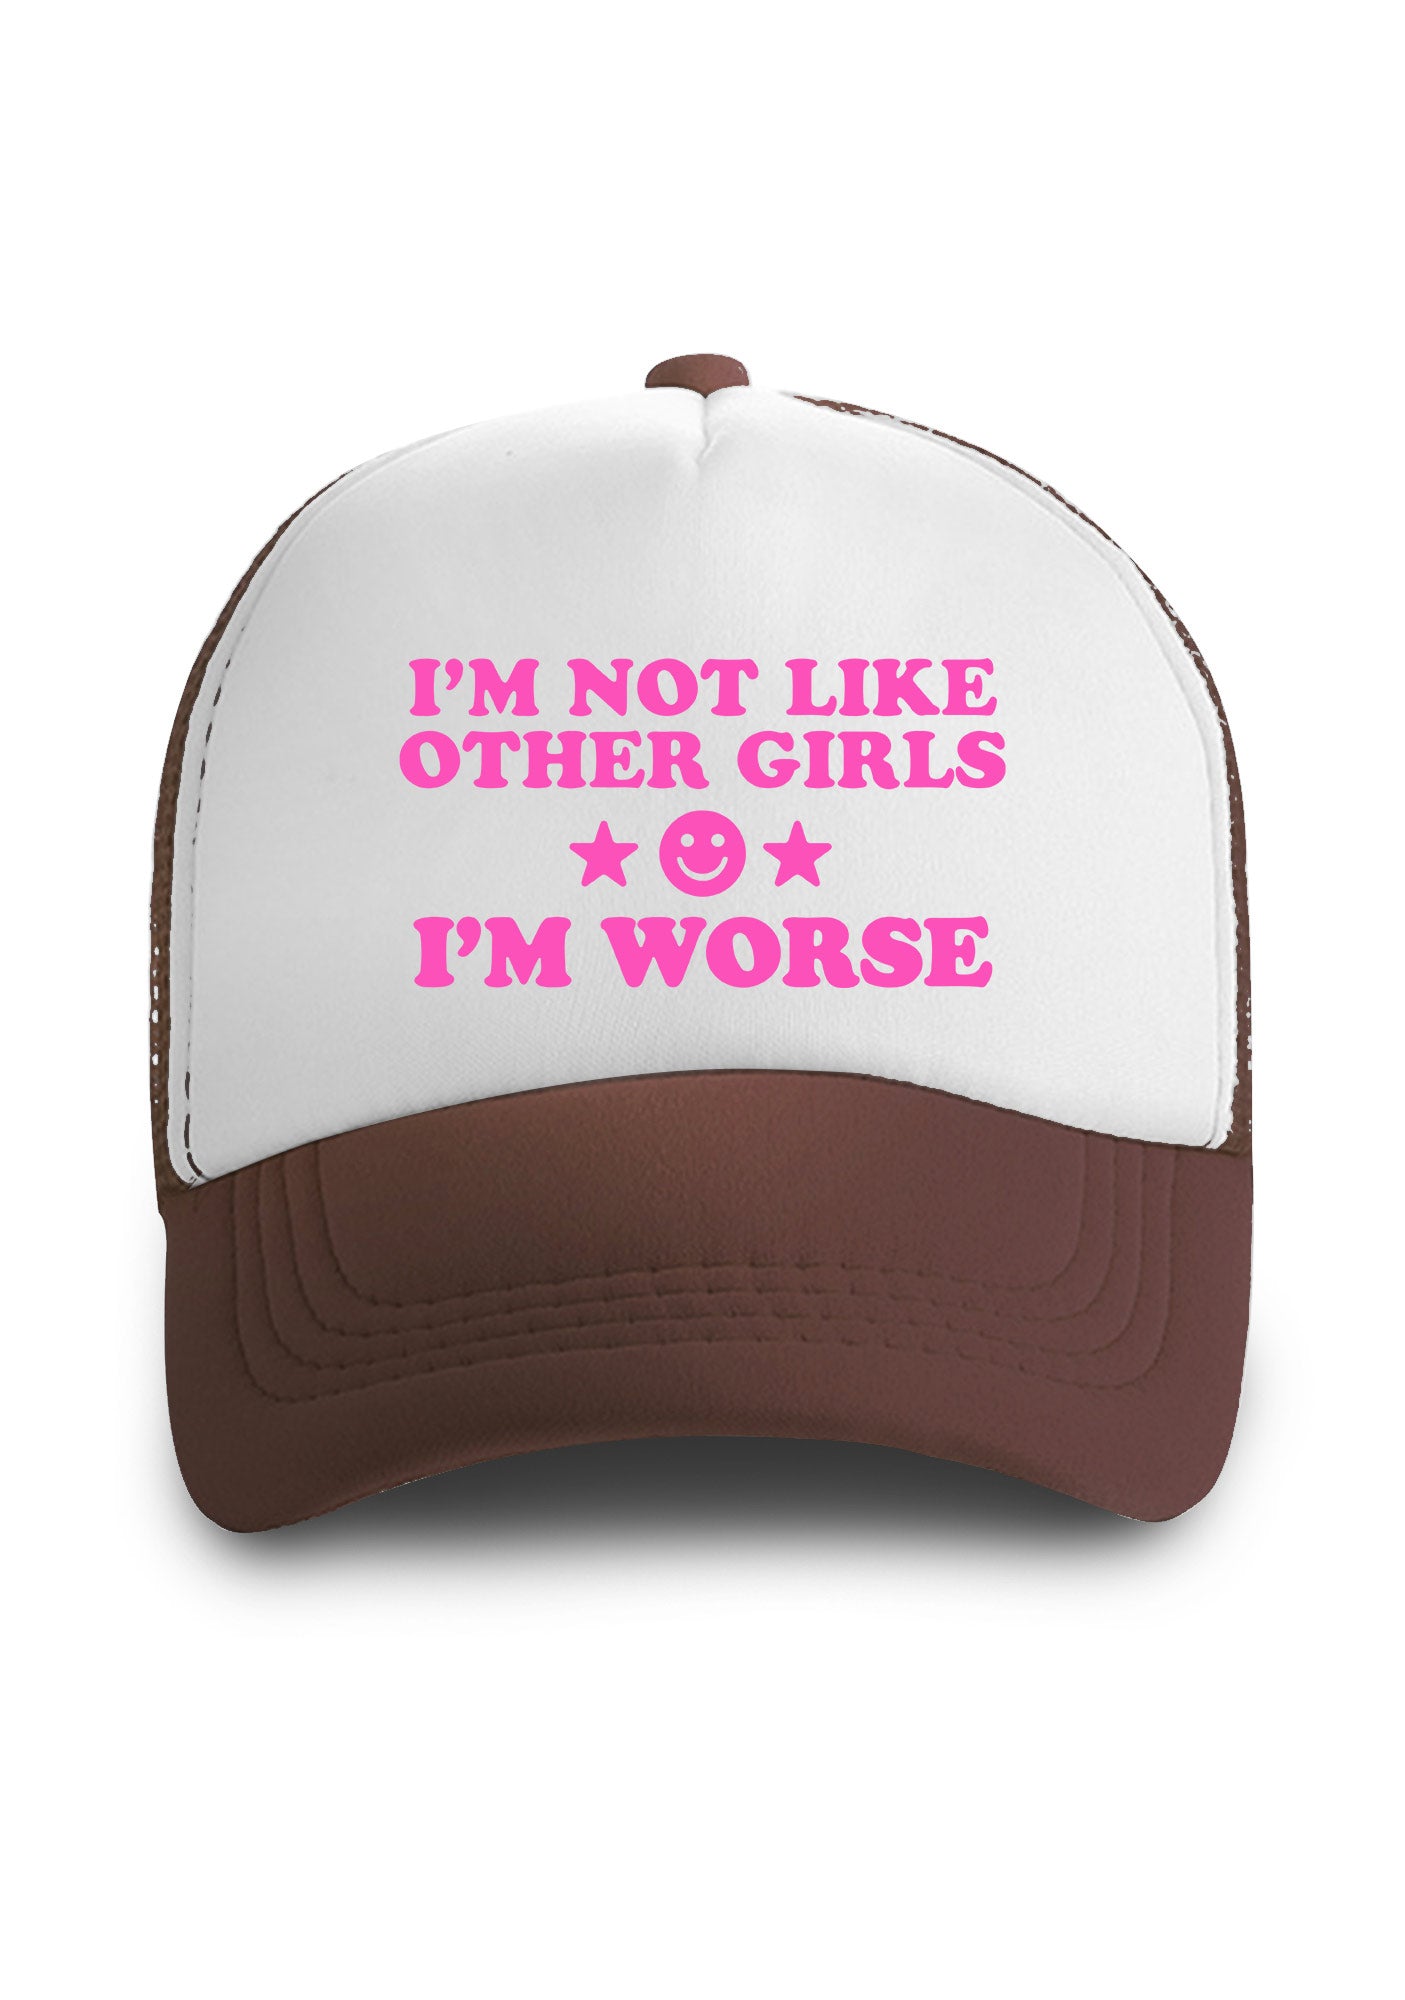 I'm Worse Trucker Hat